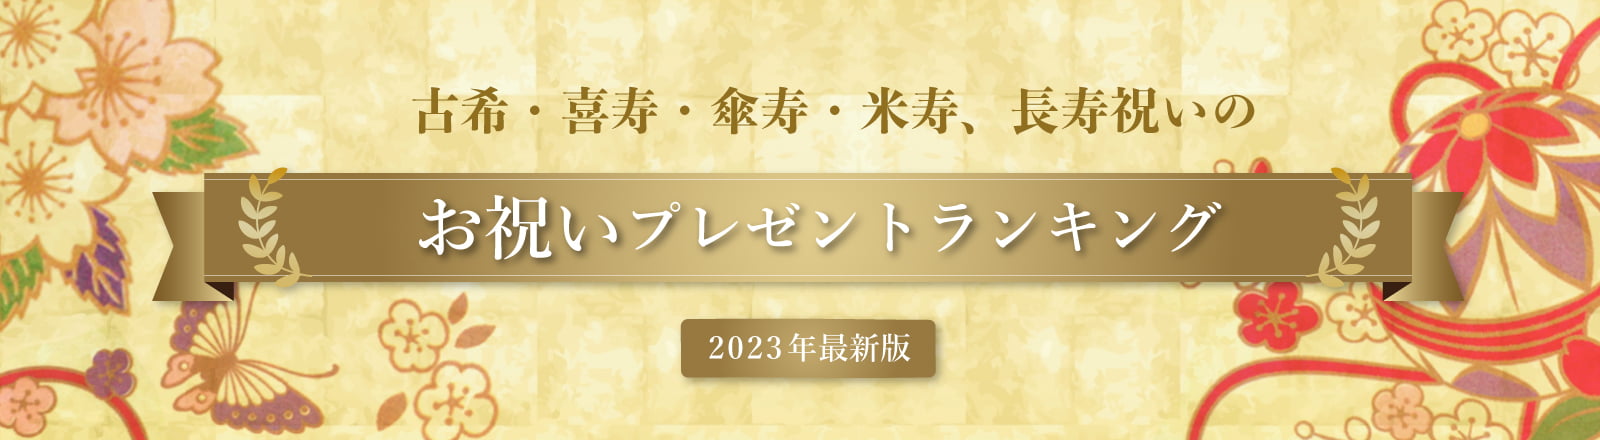 古希・喜寿・傘寿・米寿、長寿祝いのお祝いプレゼントランキング 2021年決定版